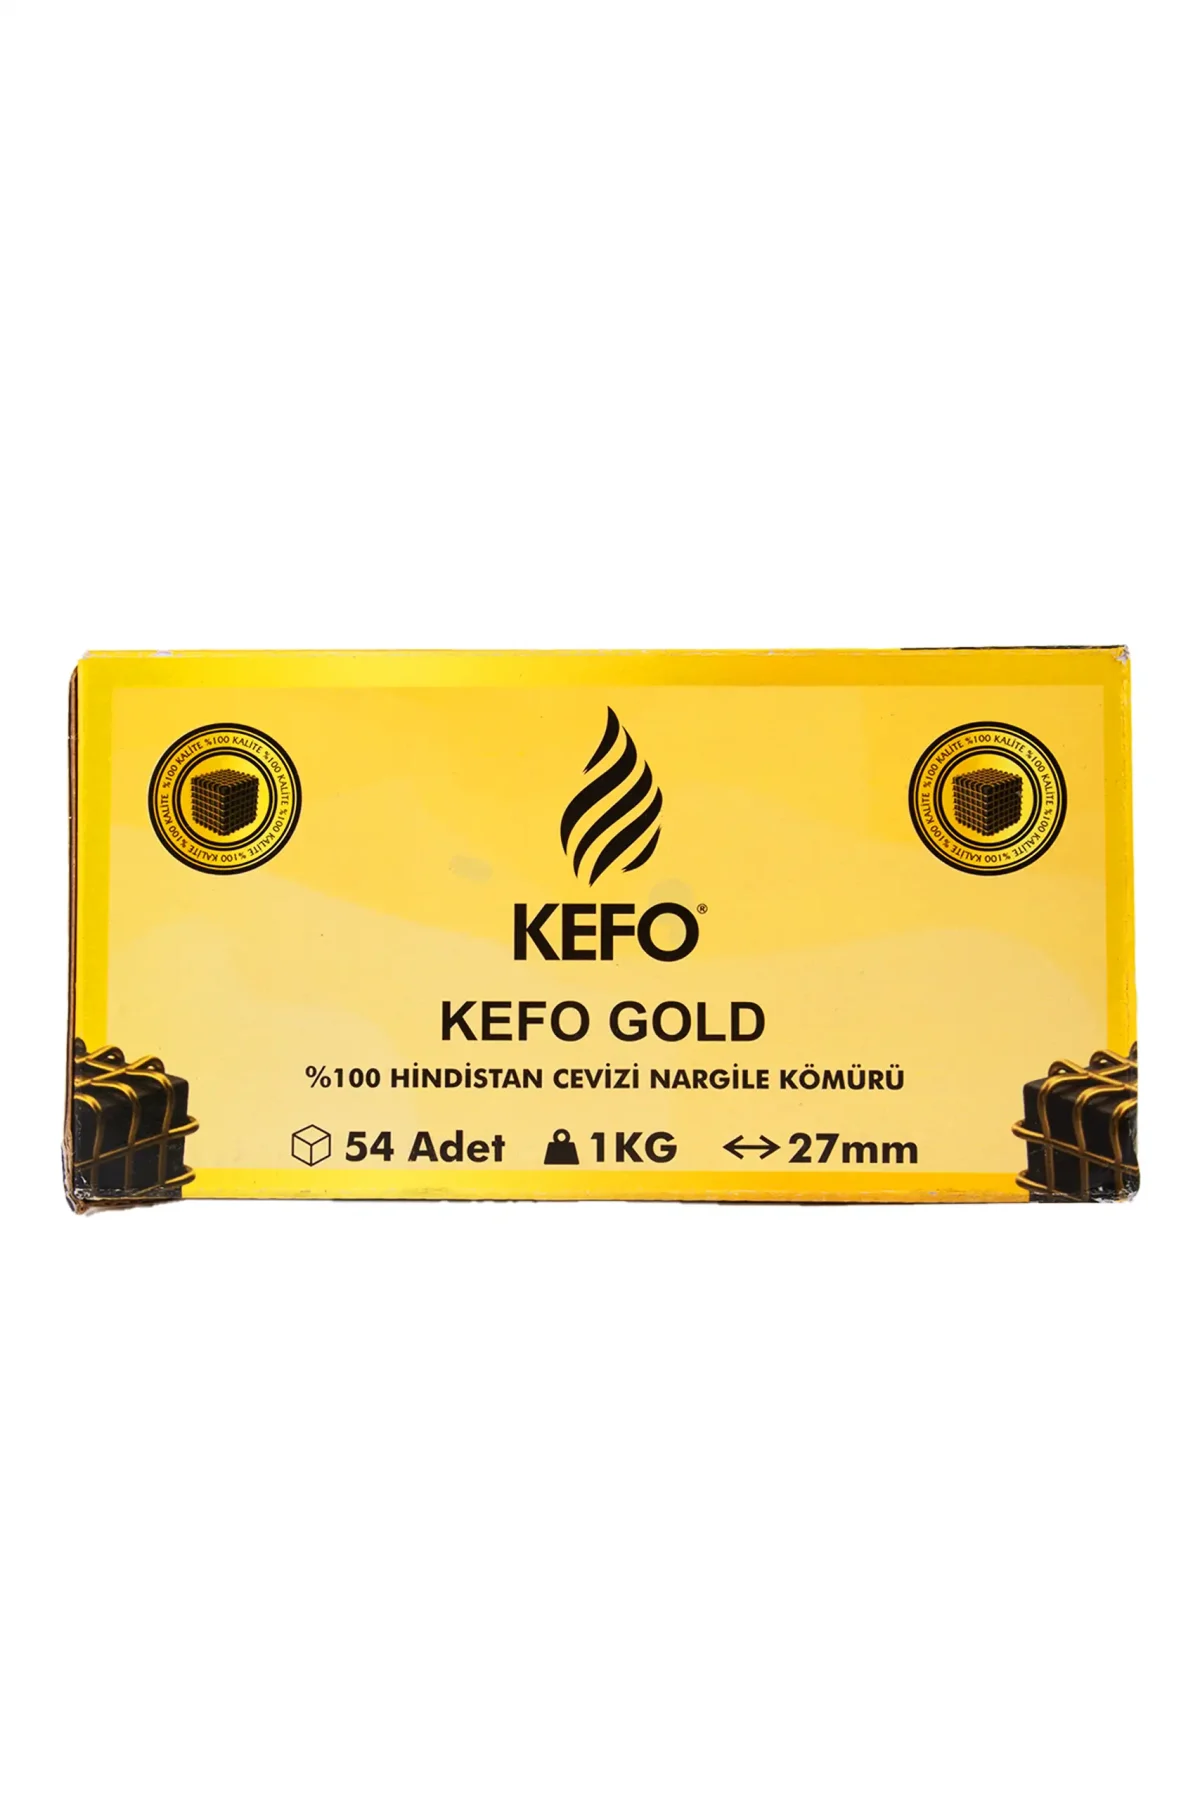 Kefo Gold 27 mm. Nargile Kömürü